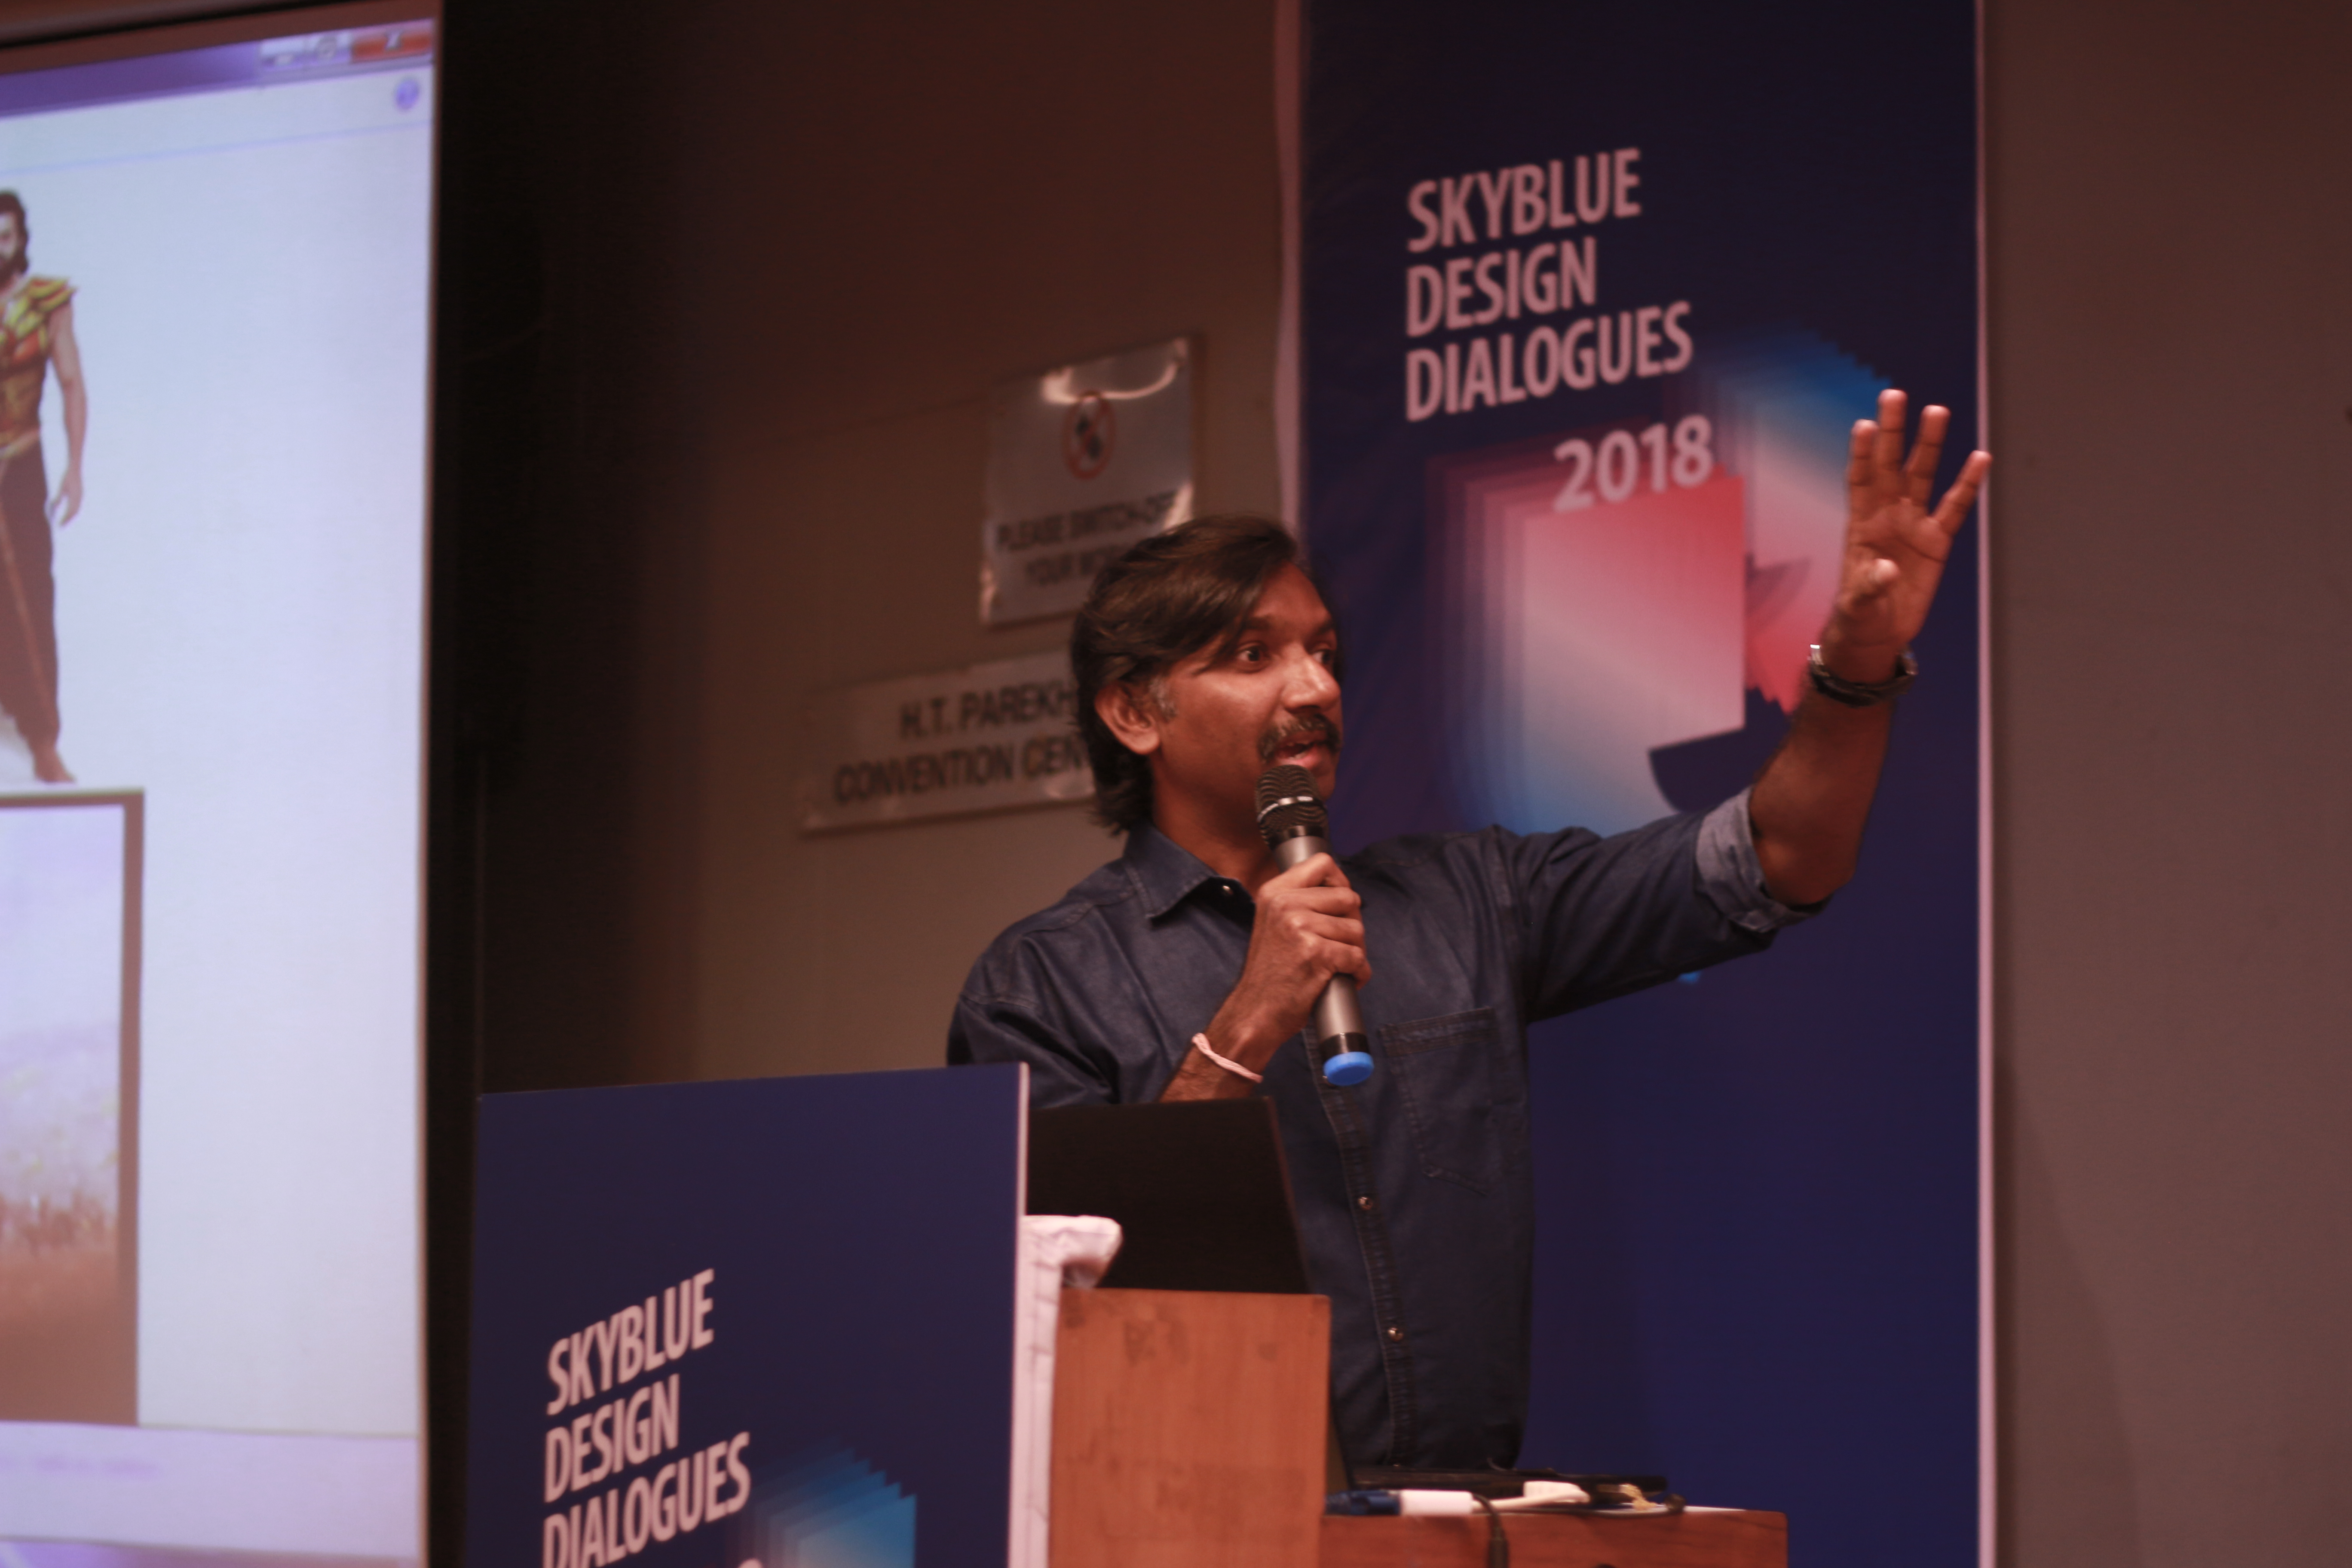 Mr. Aditya Chari- Design Dialogues 2018